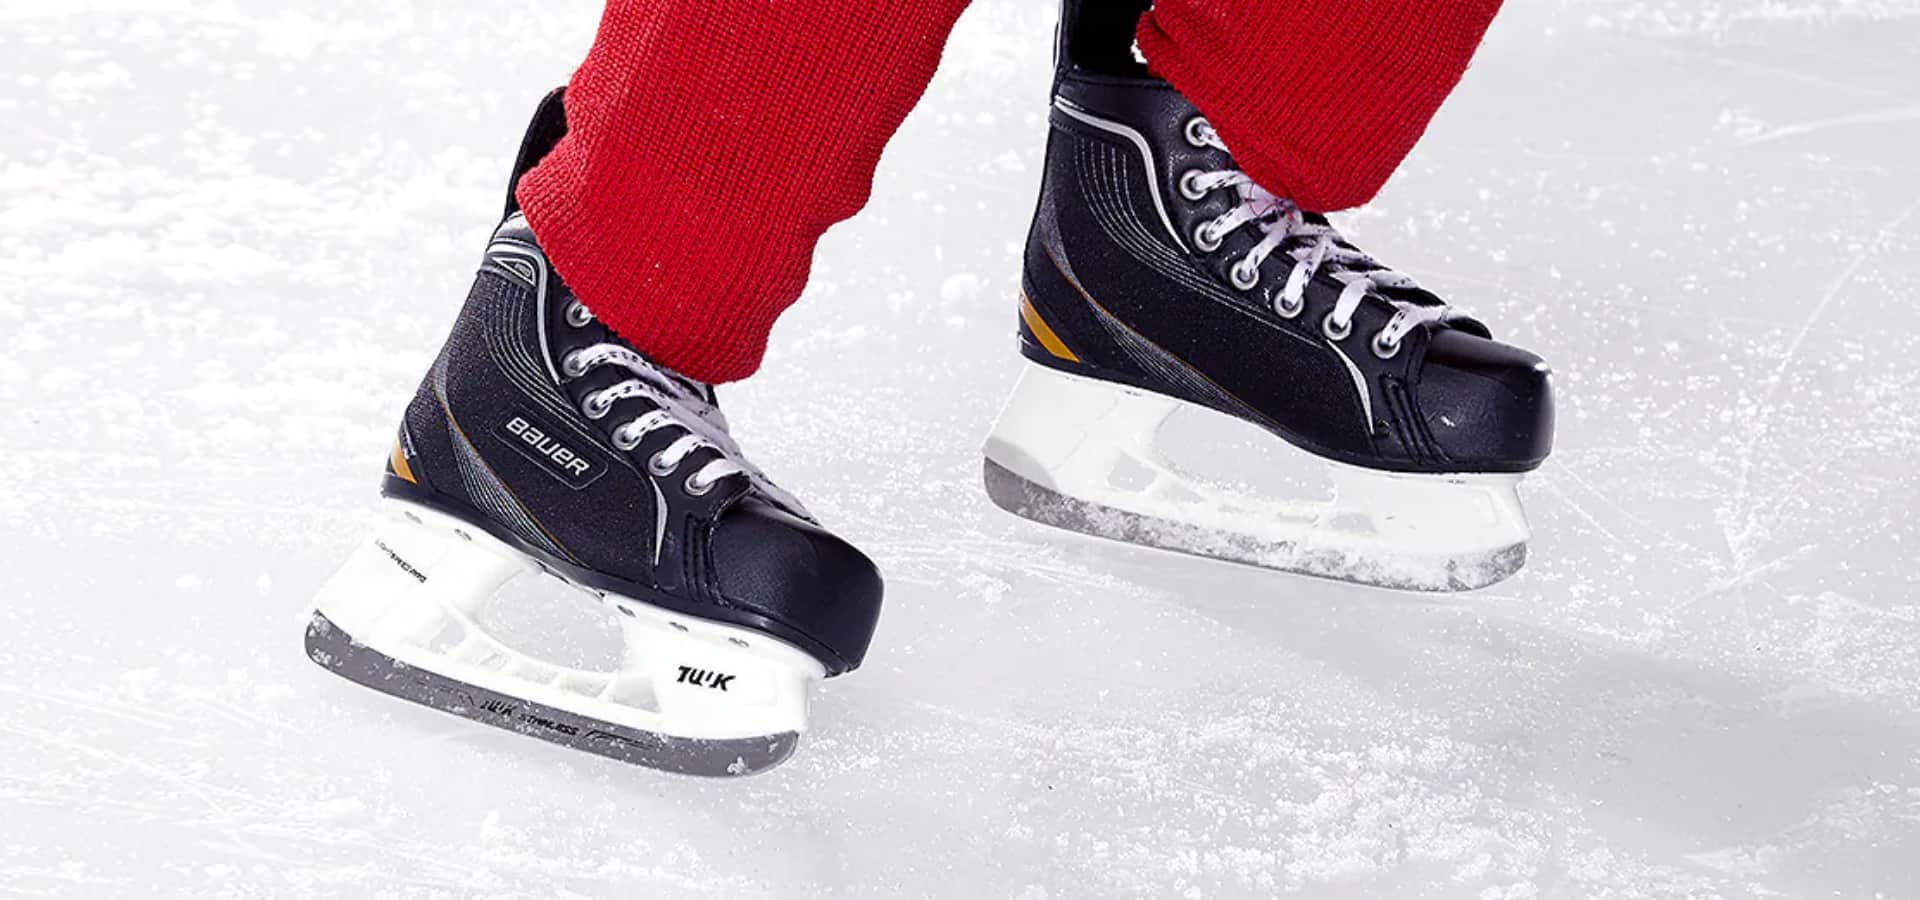 Sports fit hockey skates